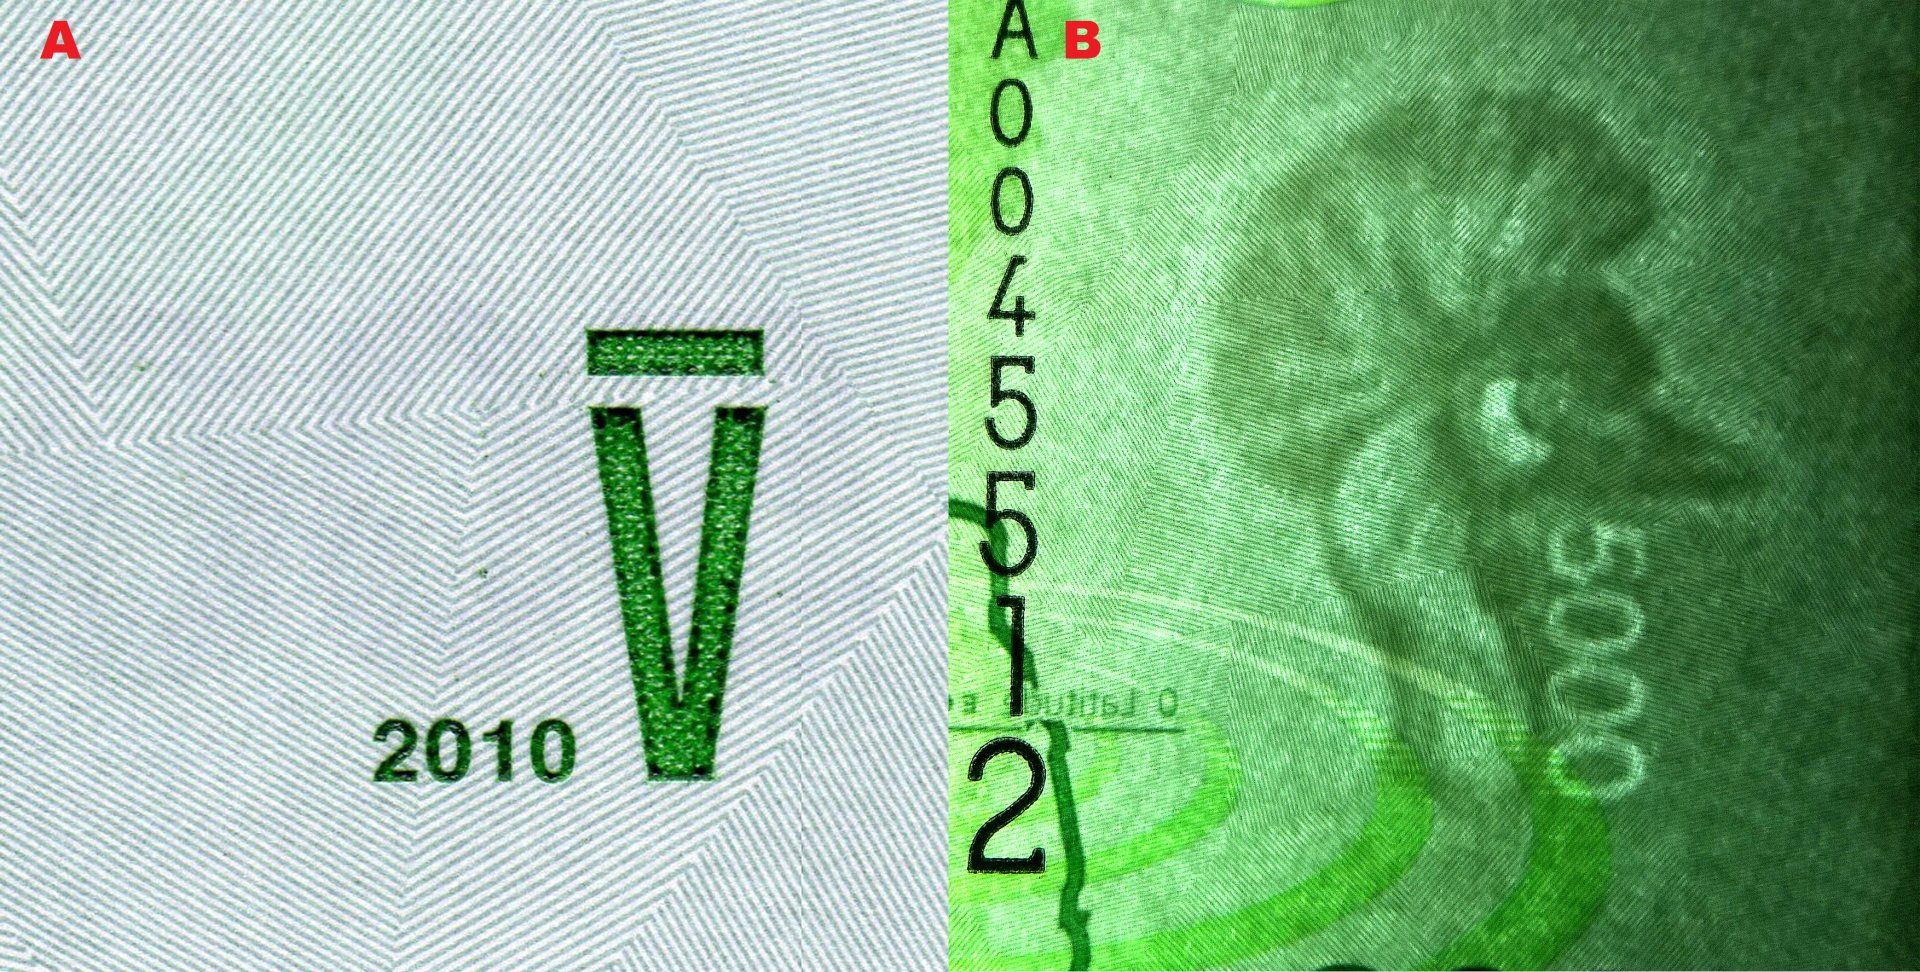 Obrázek 5 A) Pohmatová značka B) Faunistický vodoznak hlavy jeřába královského (Balearica regulorum gibbericeps) a nominál (elektrotype)